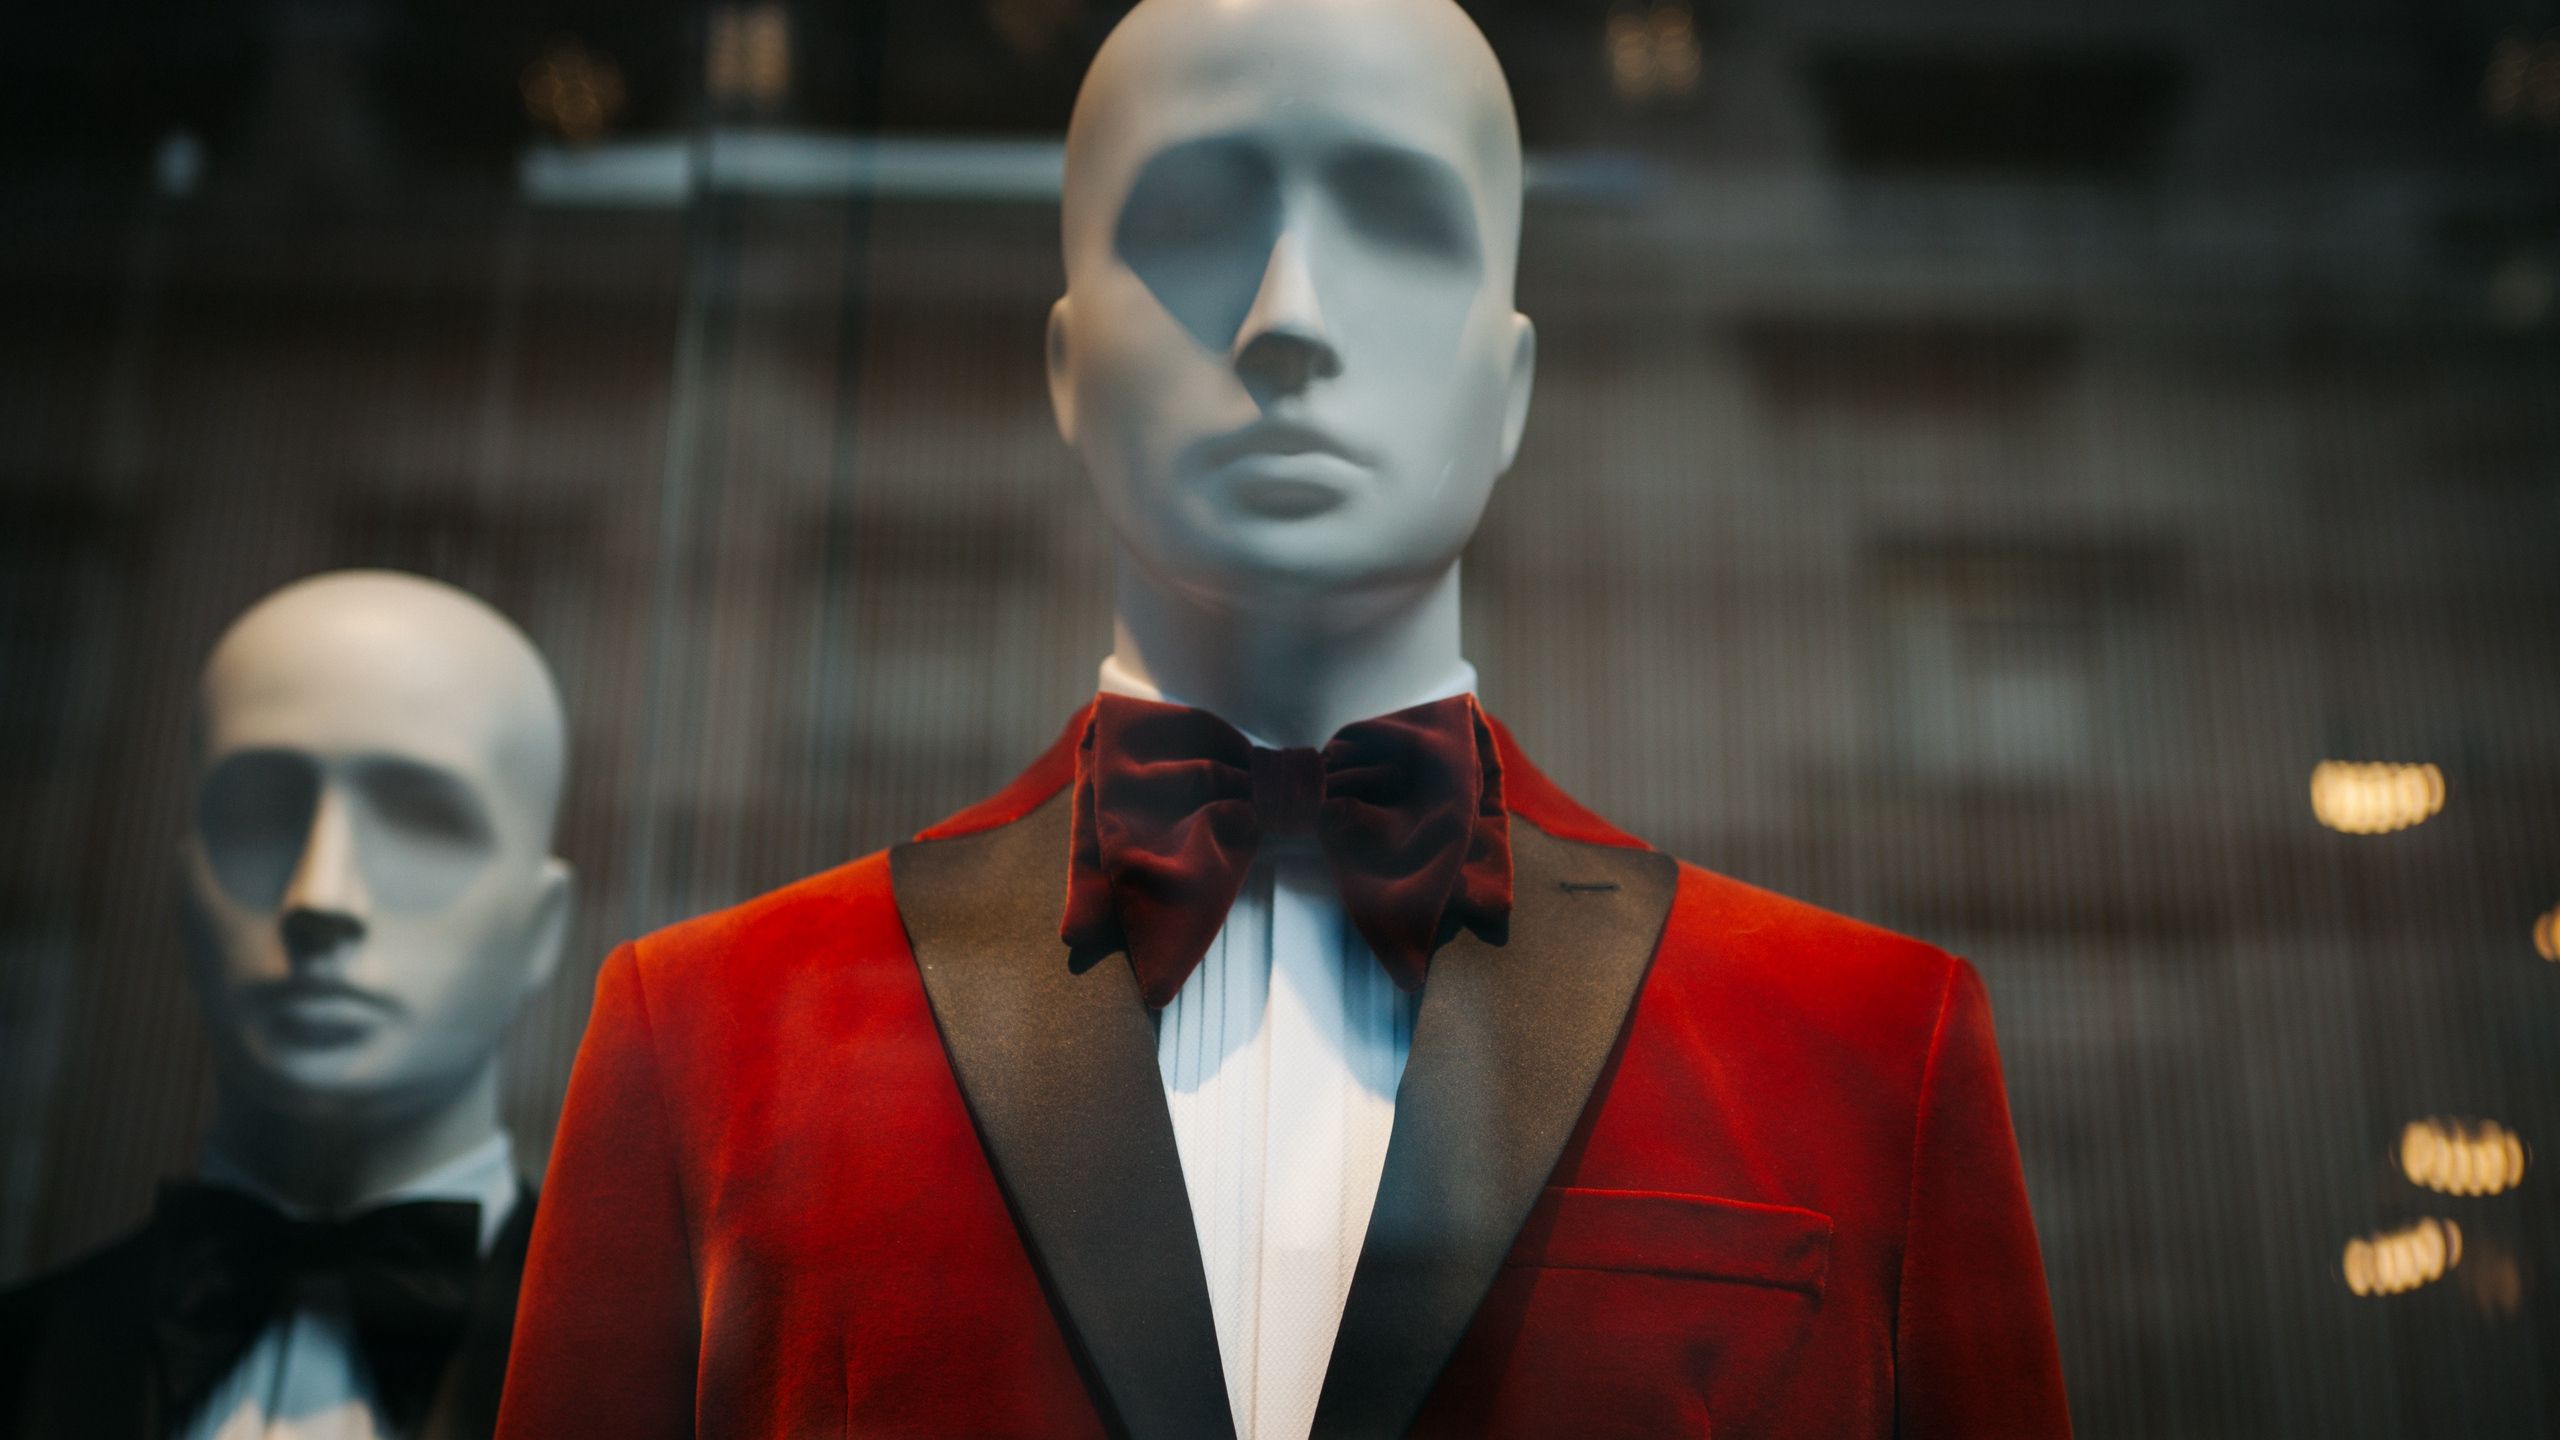 Download wallpaper 2560x1440 mannequin, suit, men, fashion, style